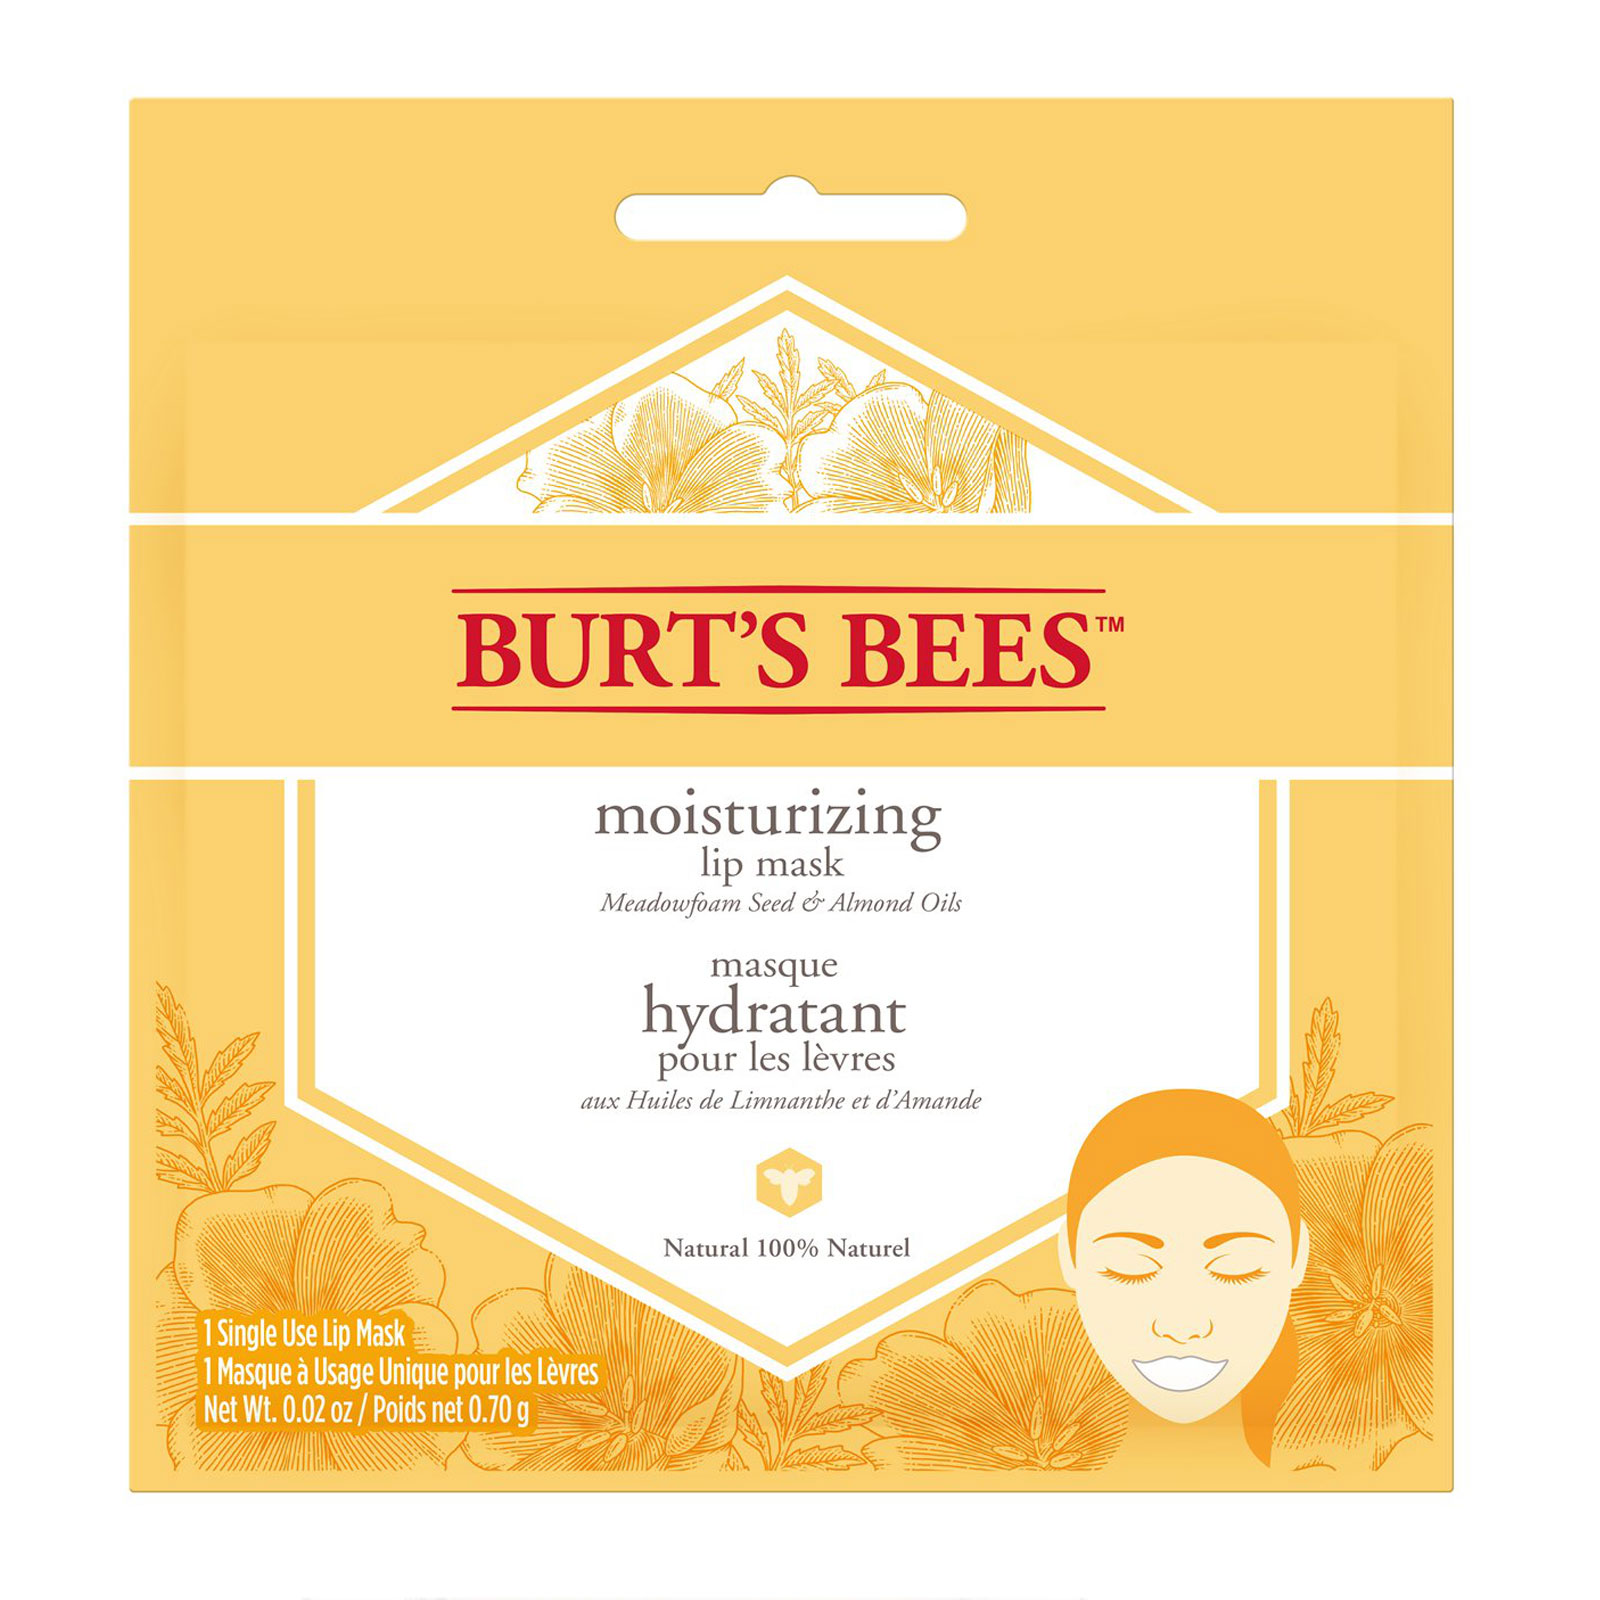 Burt's Bees - Burt’s bees moisturizing lip mask 0.70g